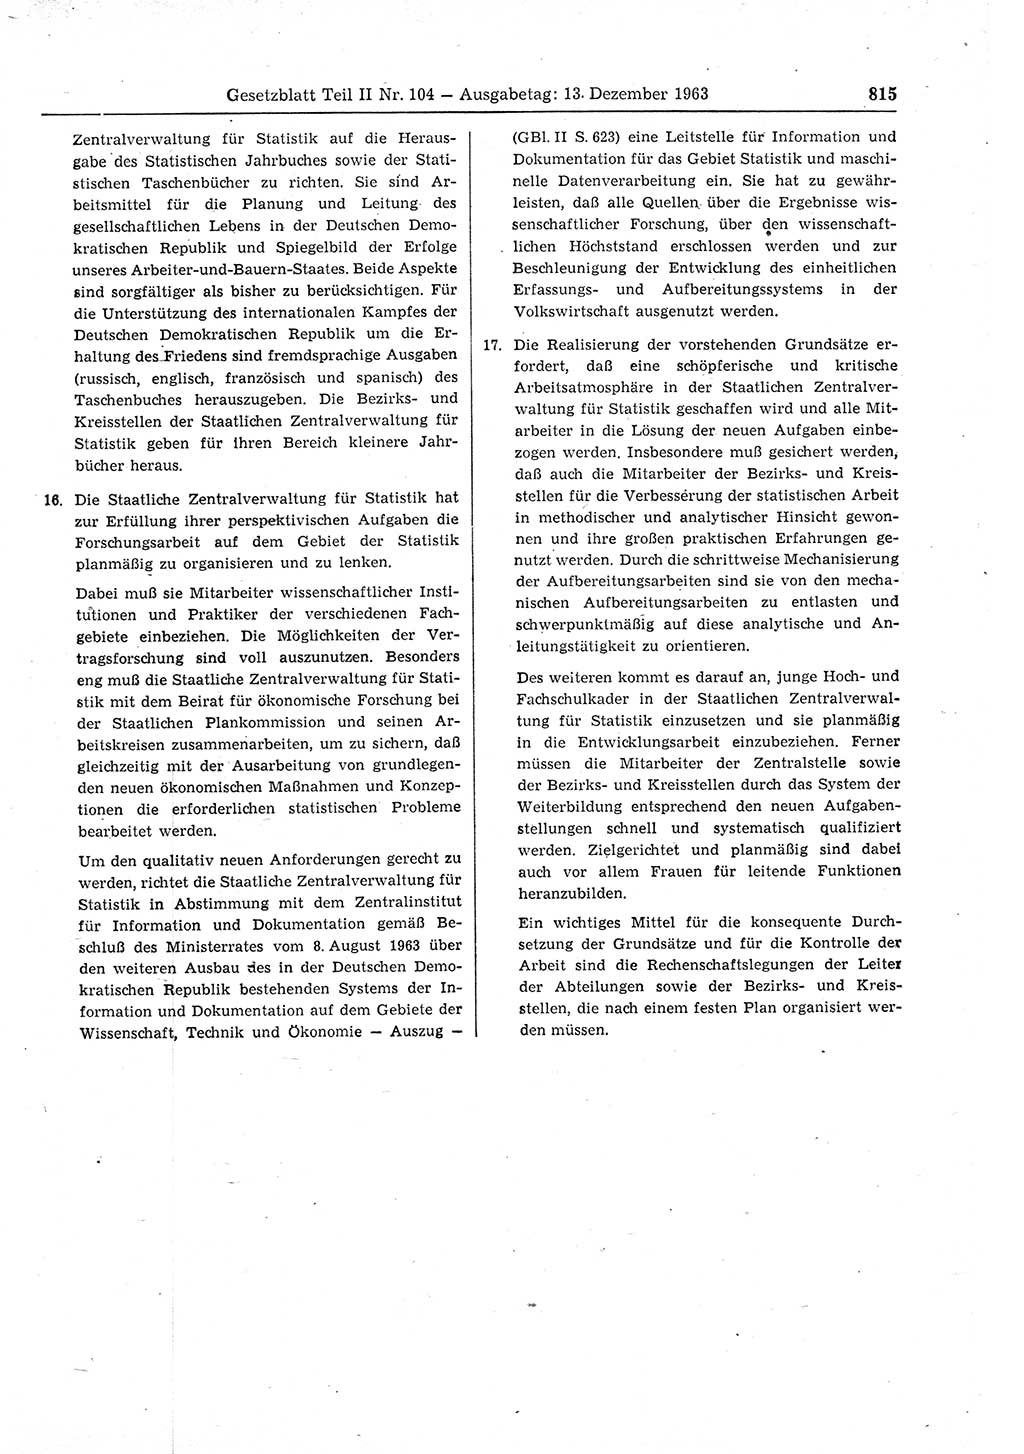 Gesetzblatt (GBl.) der Deutschen Demokratischen Republik (DDR) Teil ⅠⅠ 1963, Seite 815 (GBl. DDR ⅠⅠ 1963, S. 815)